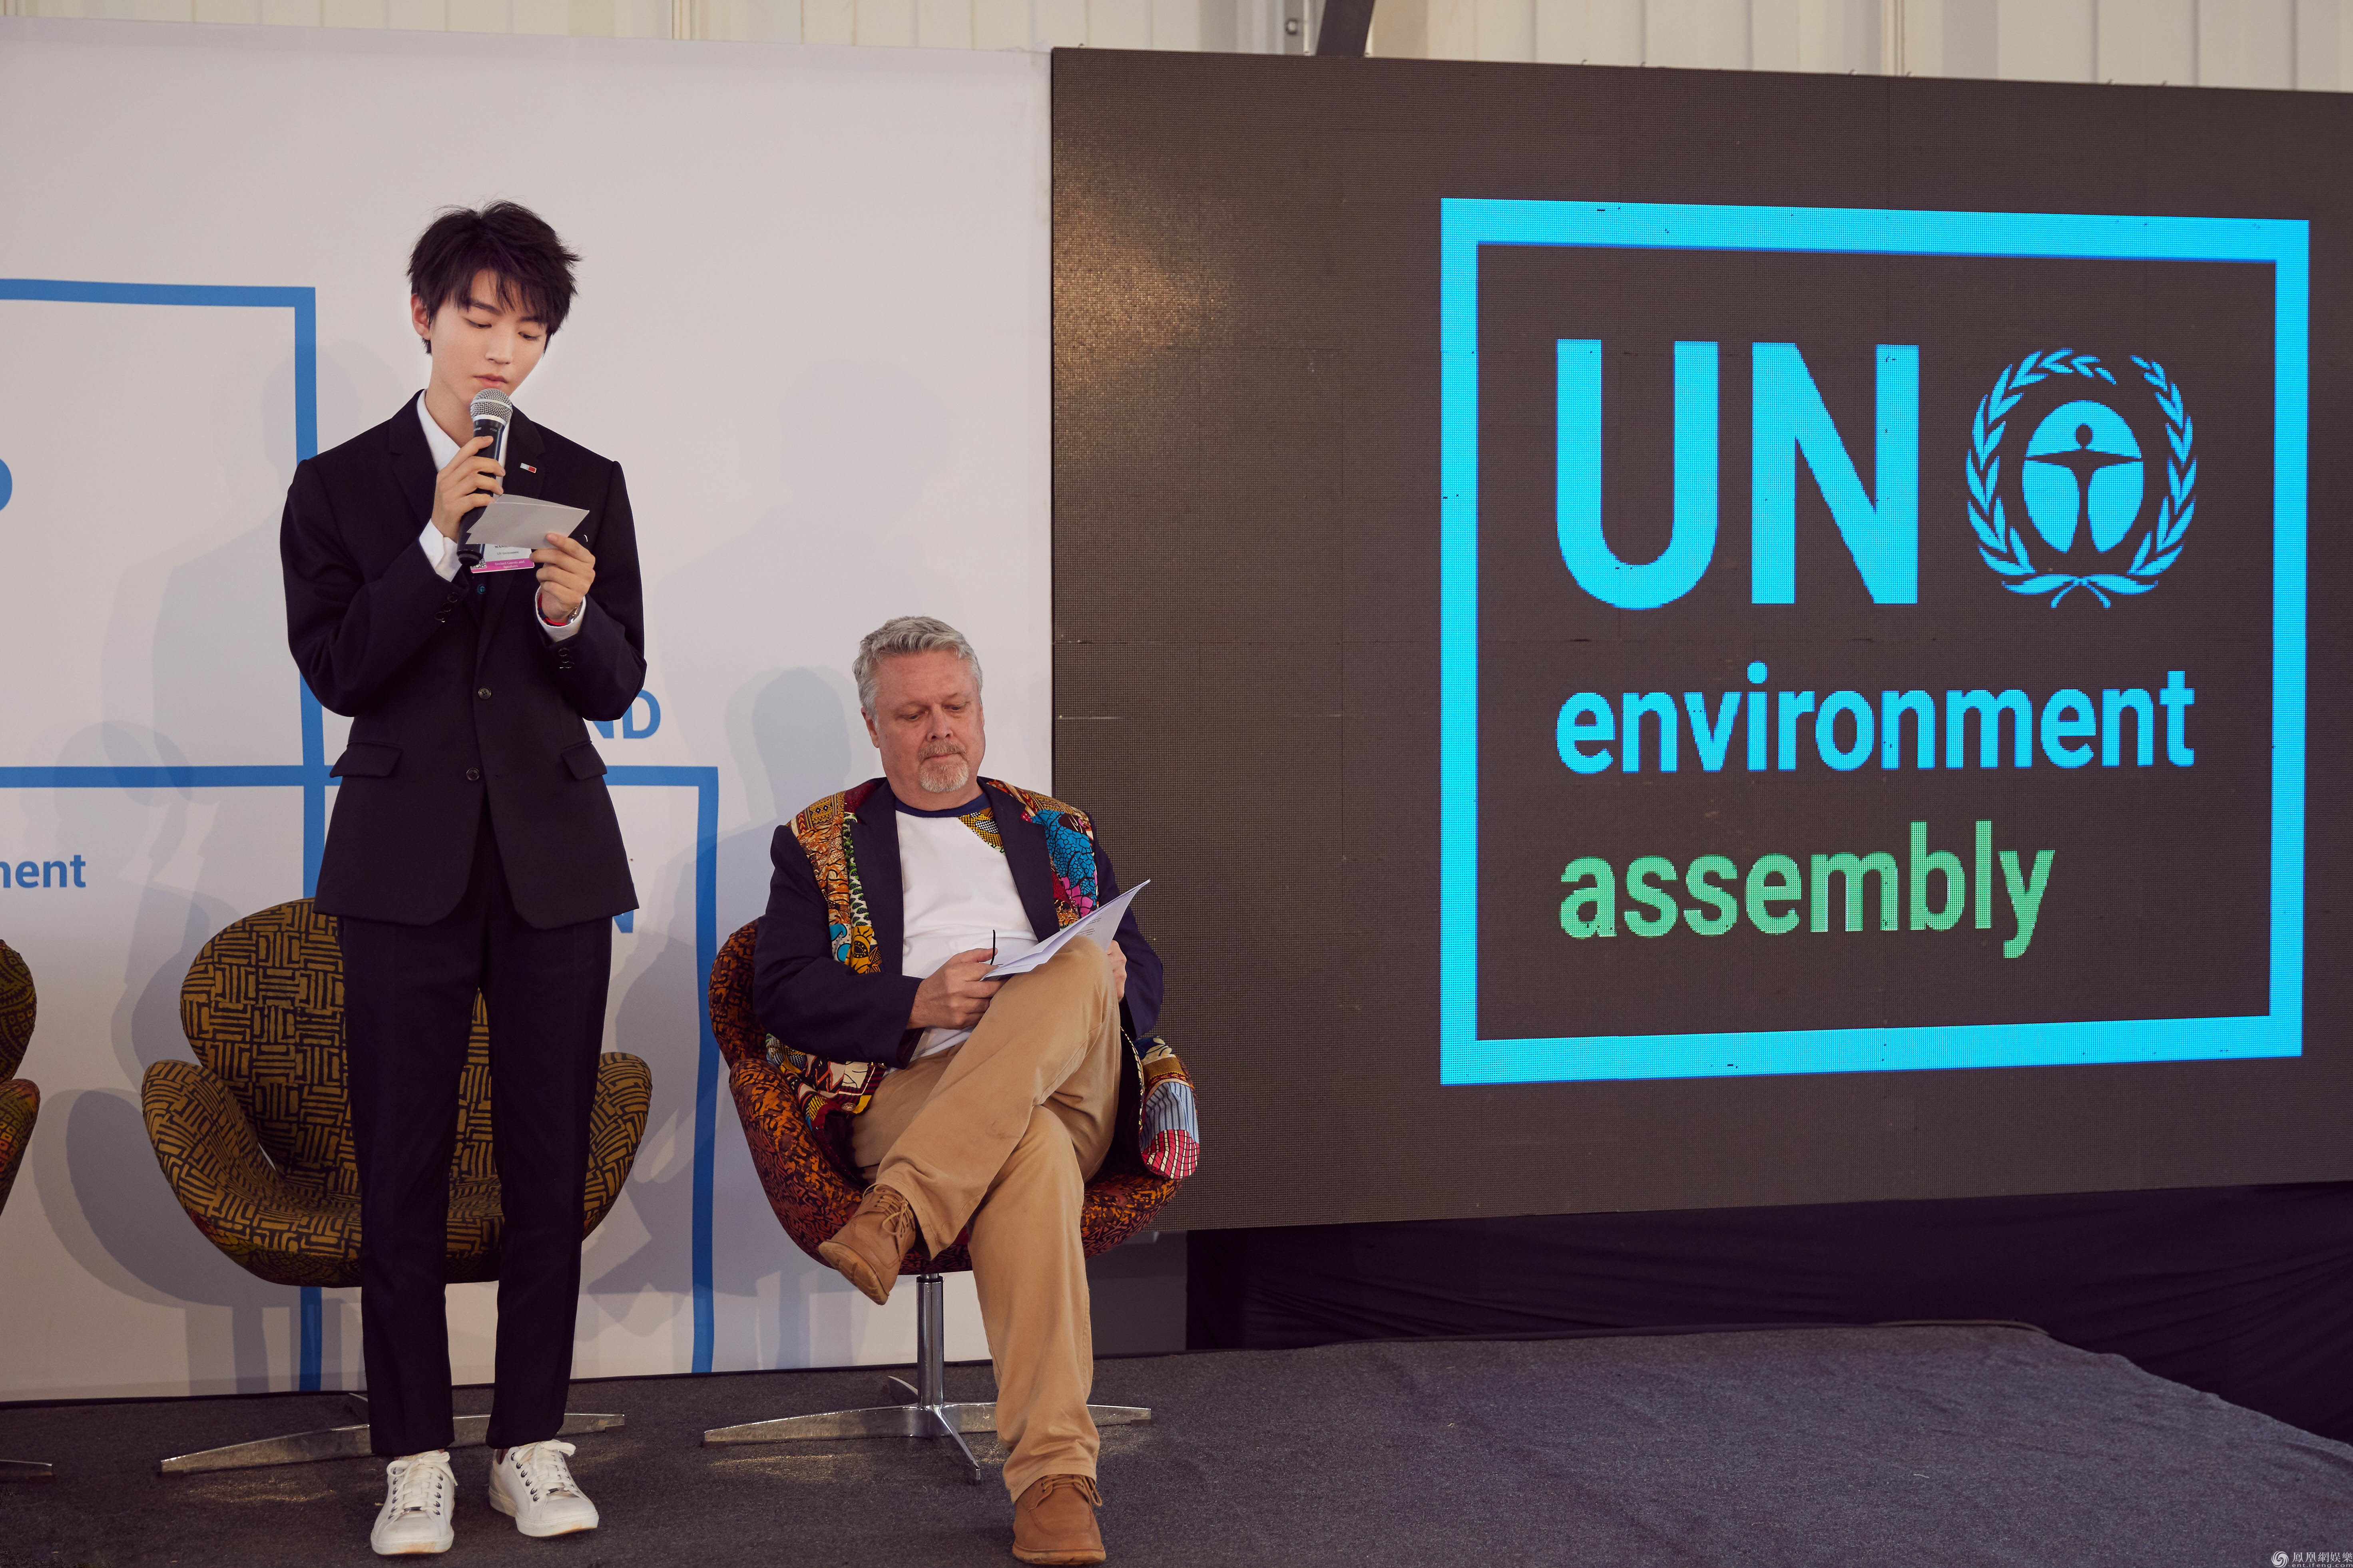 王俊凯联合国环境大会全英文演讲 亲善大使为环保发声